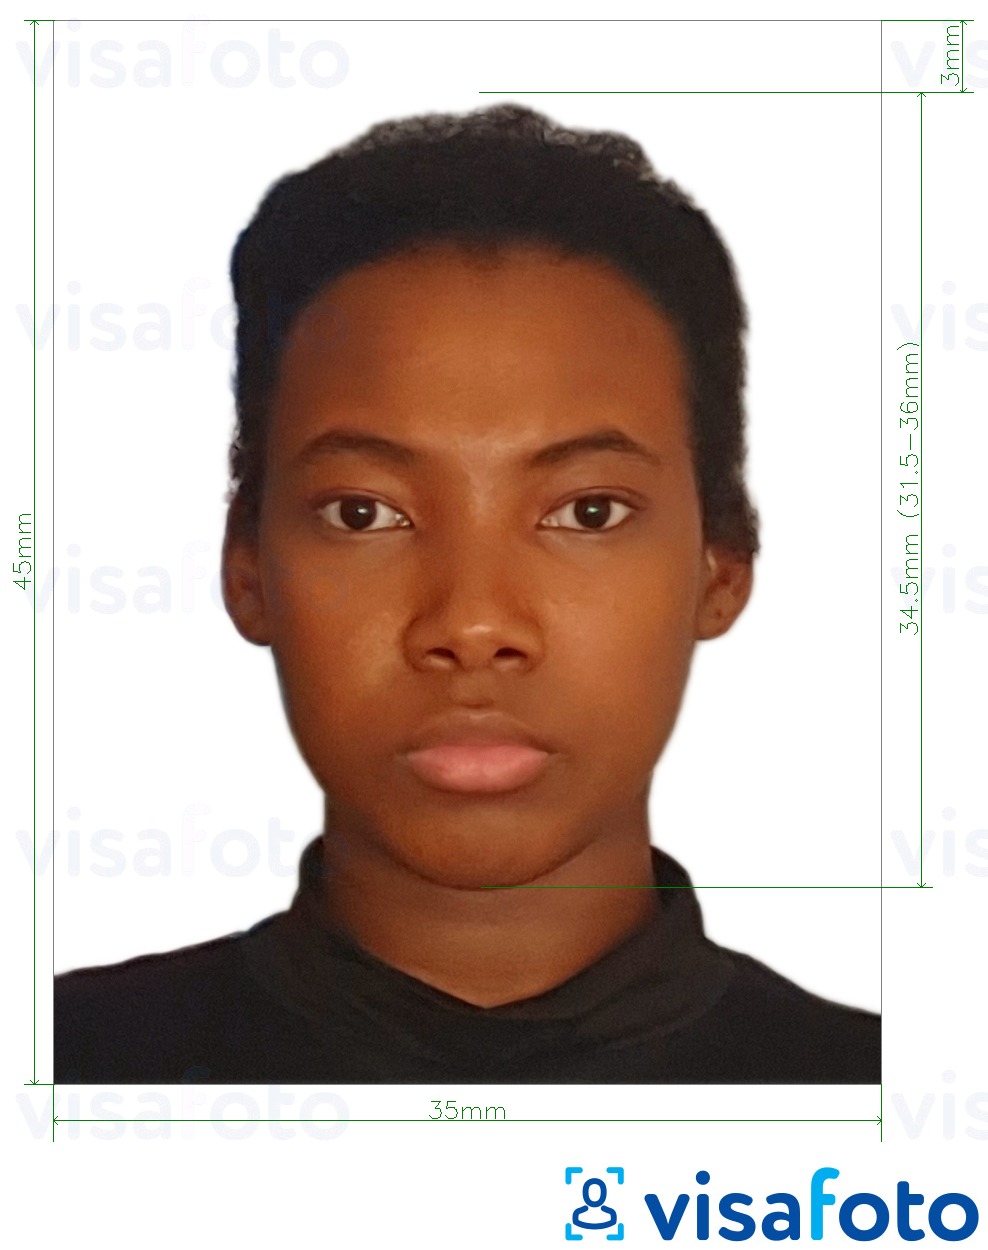 Приклад фотографії для Гайянський паспорт 45x35 мм (1,77 х 1,38 дюйма) з точними специфікаціями розміру